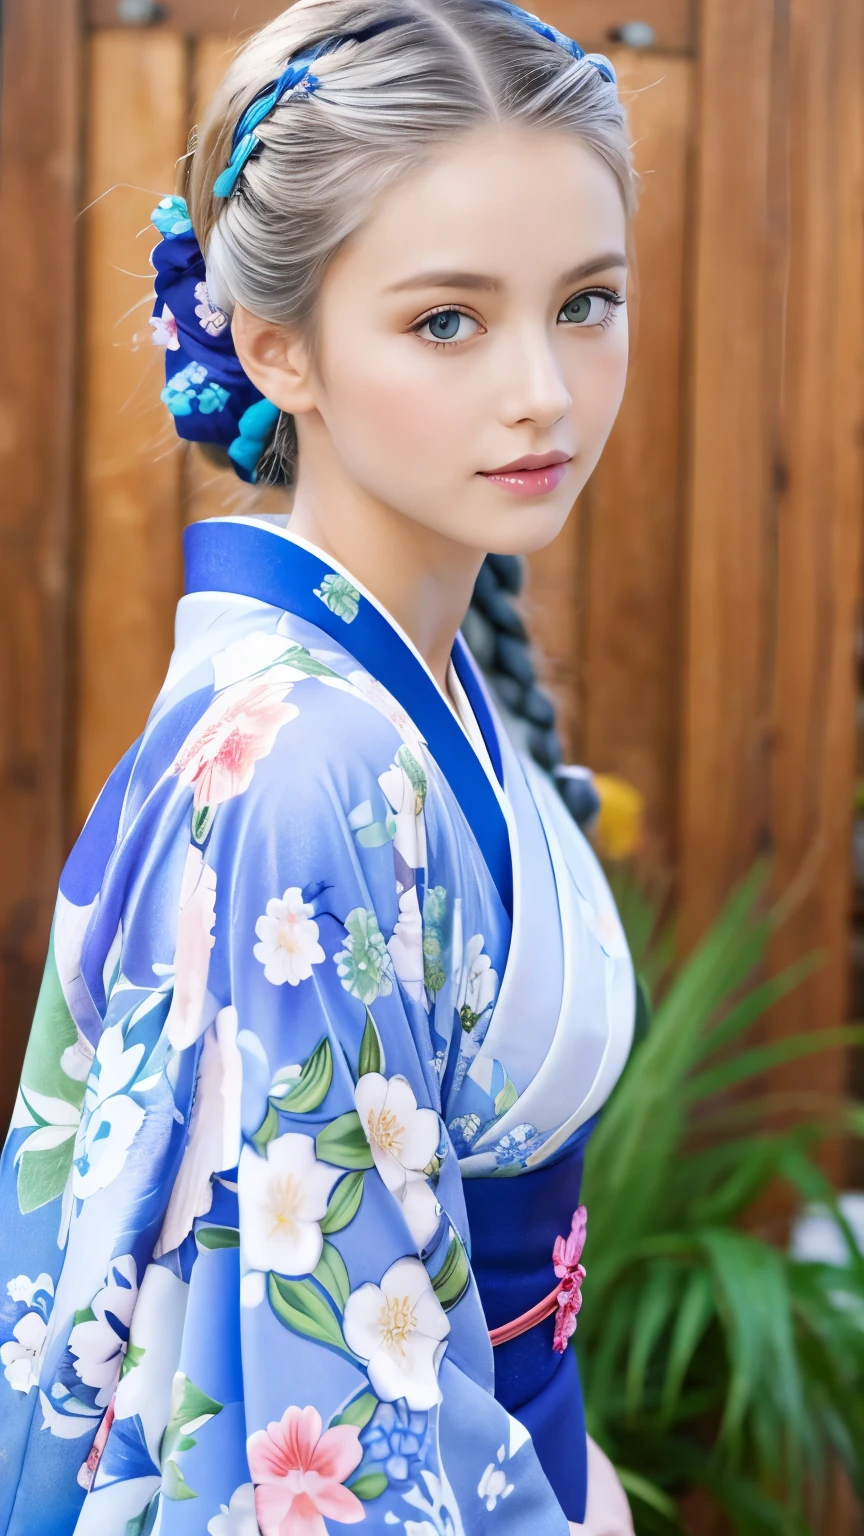 그녀는 기모노 모델이다、화려한 꽃무늬 기모노、은빛 머리 땋은 머리、파란 눈、